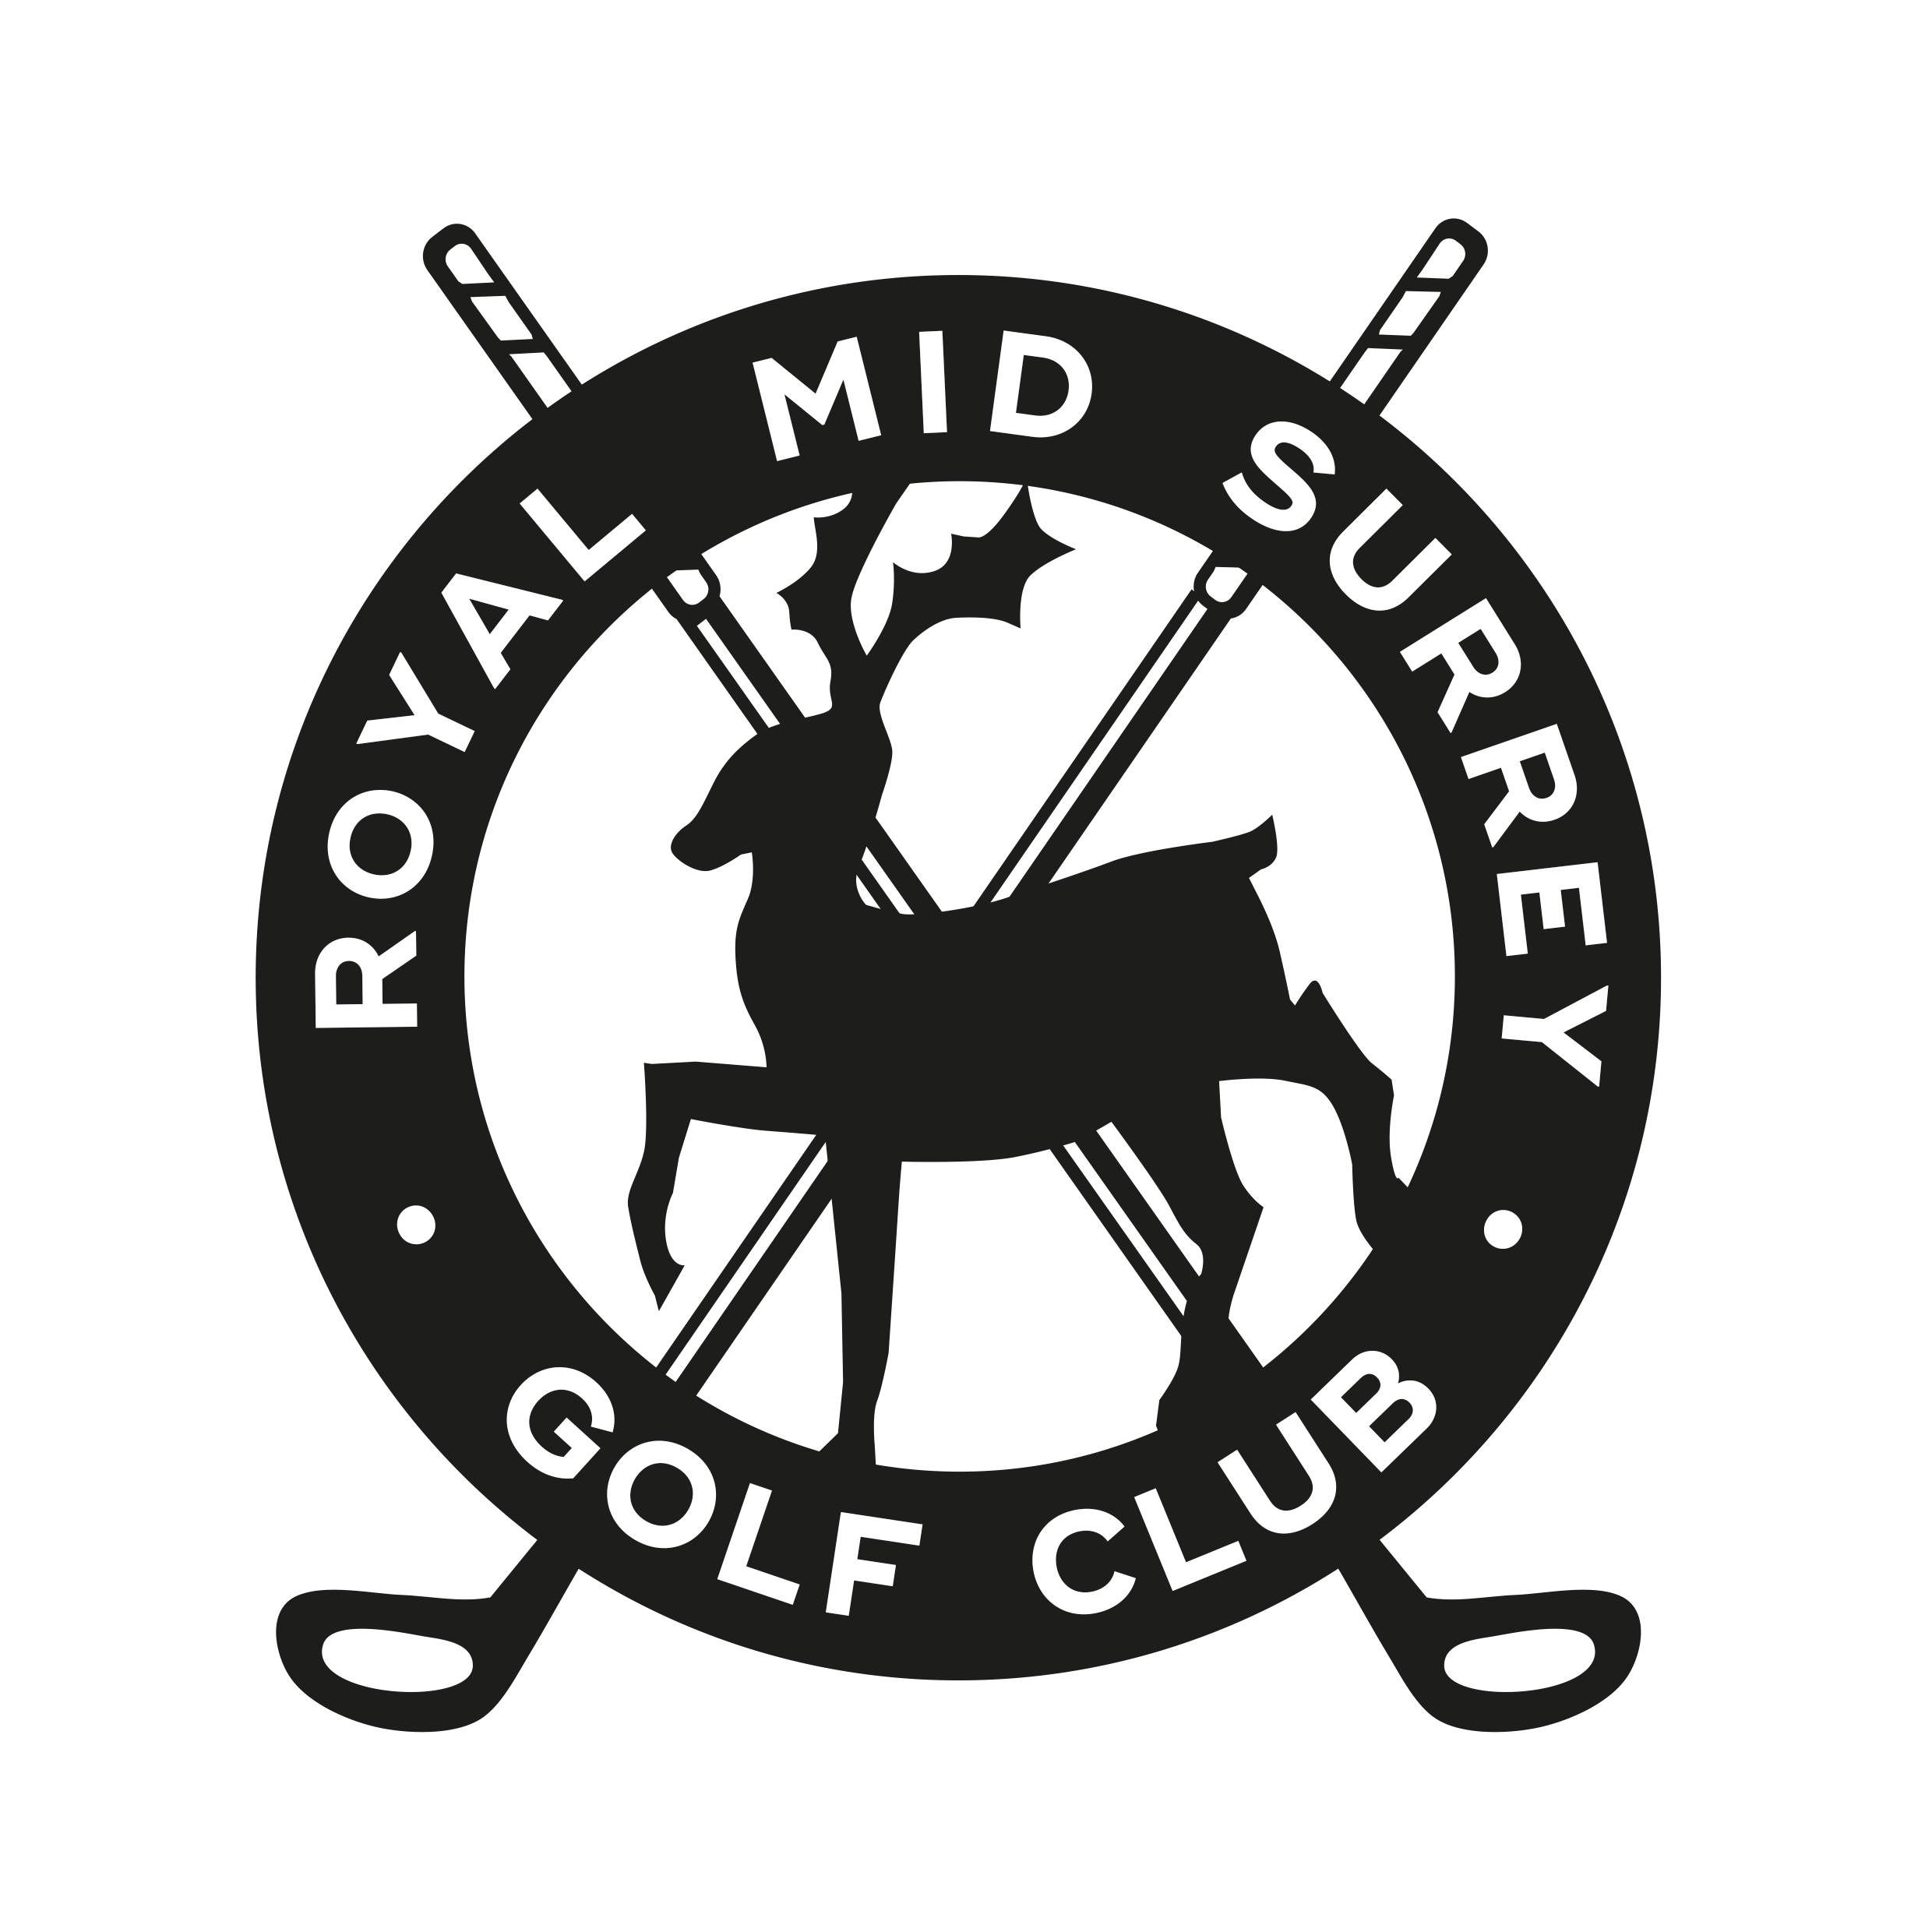 Golf Club Logo - Royal Mid Surrey Golf Club - Golf Club